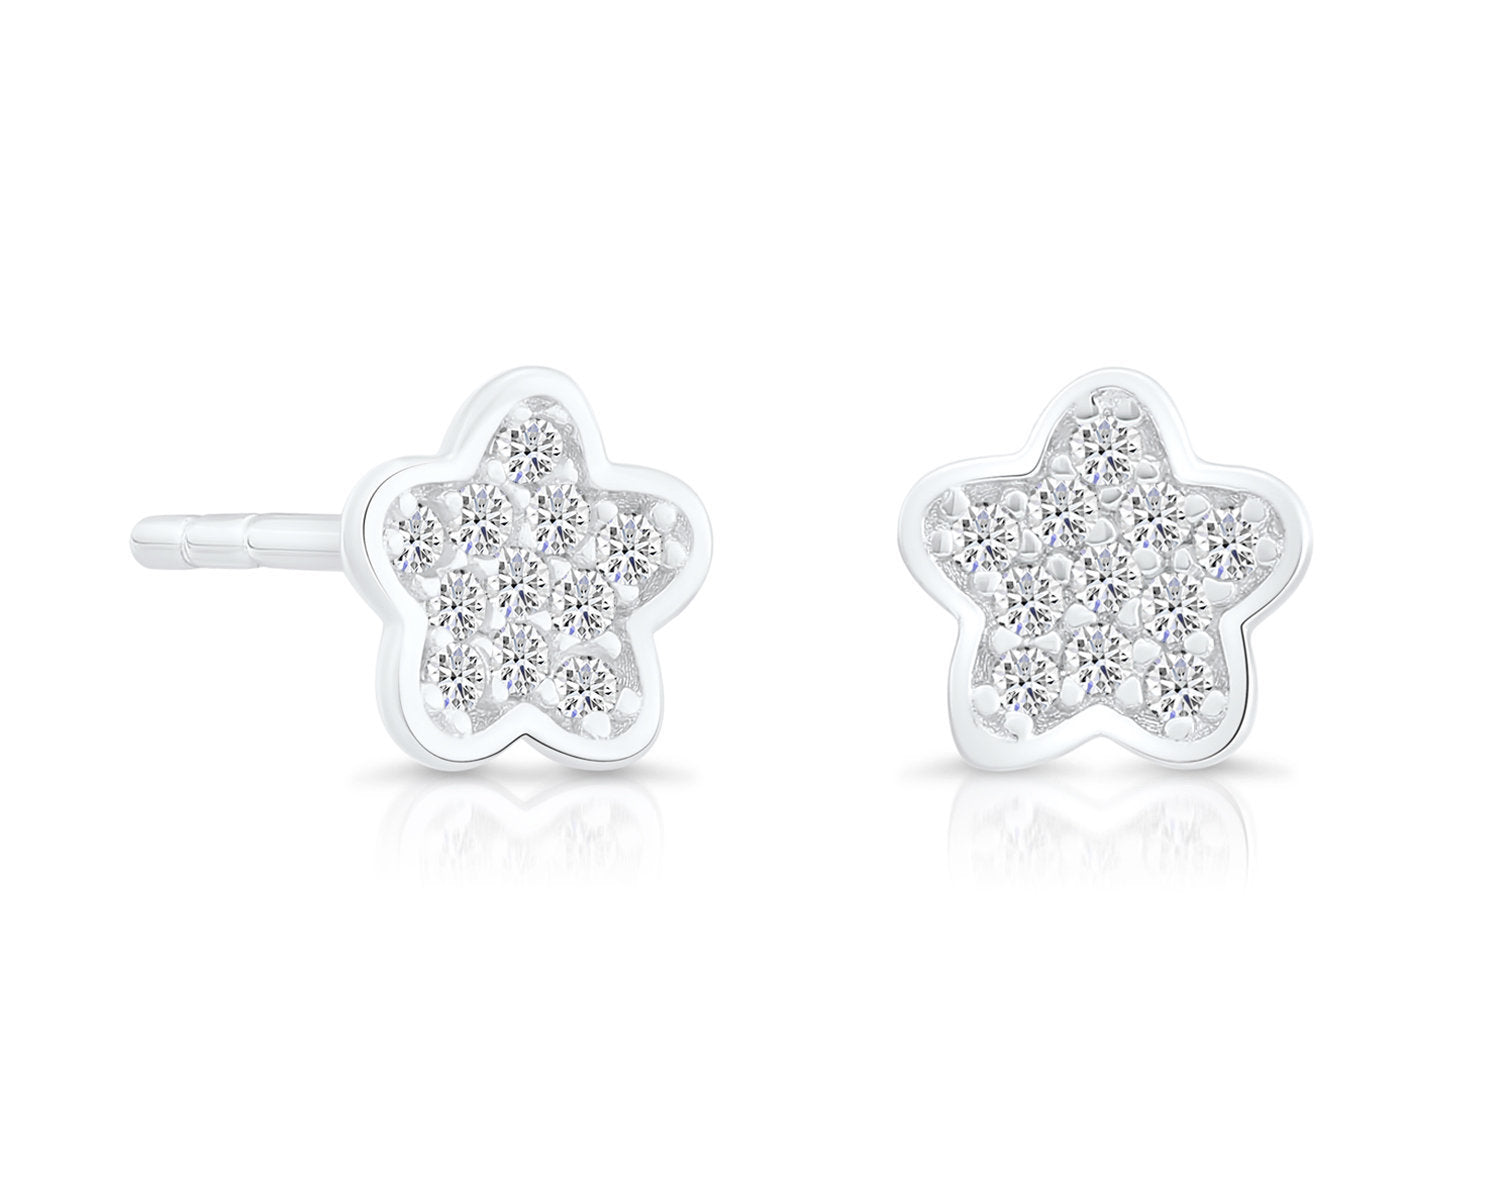 Little Flower Stud Earrings in Sterling Silver